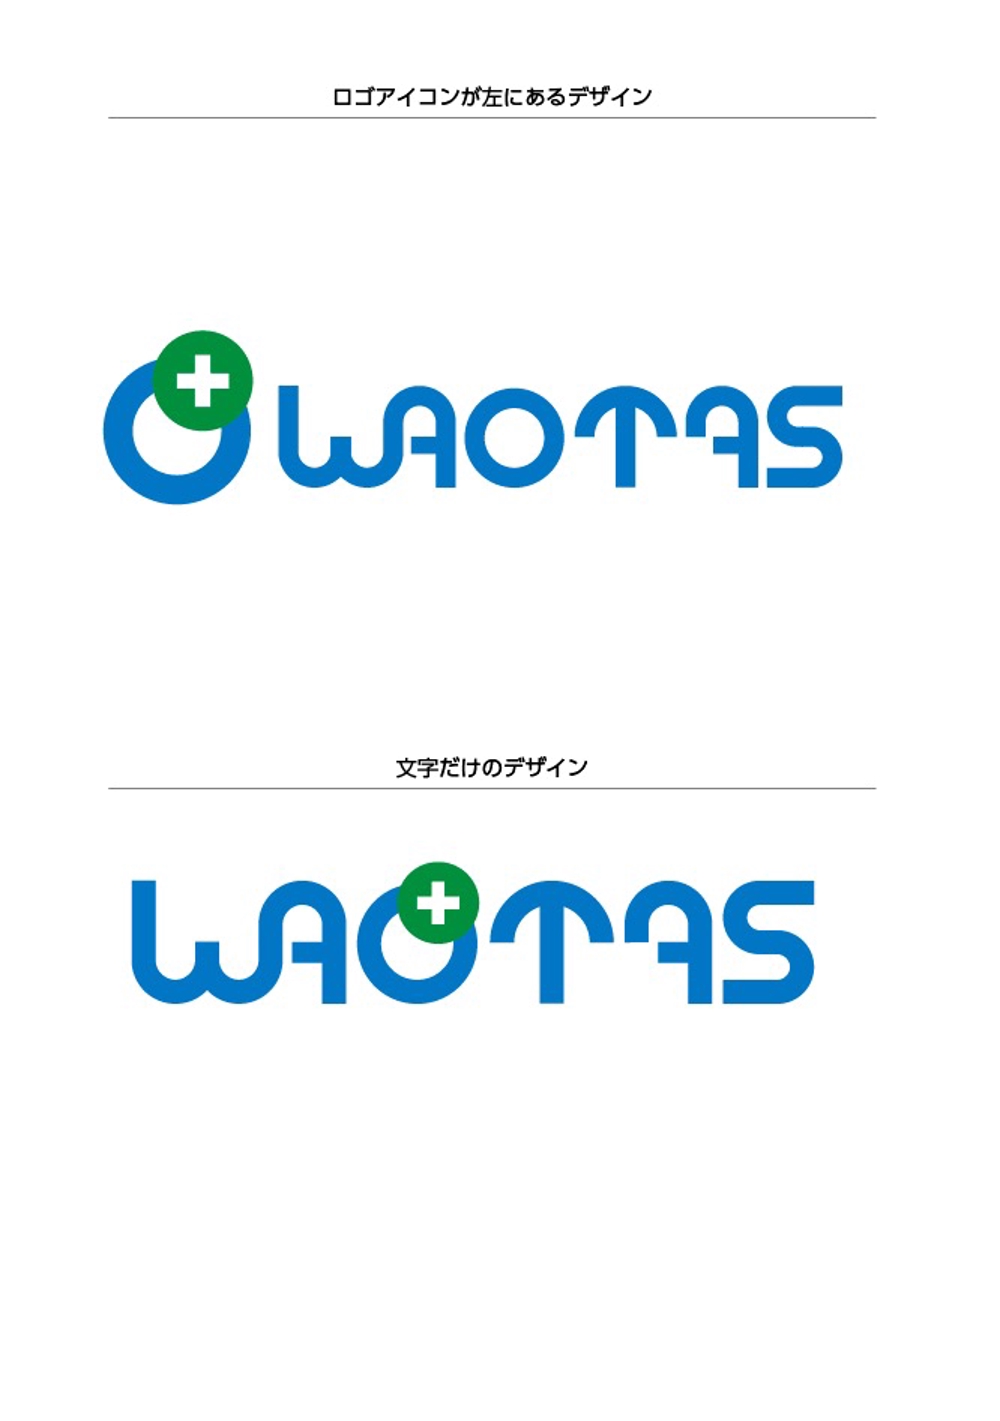 WAOTAS-02.jpg